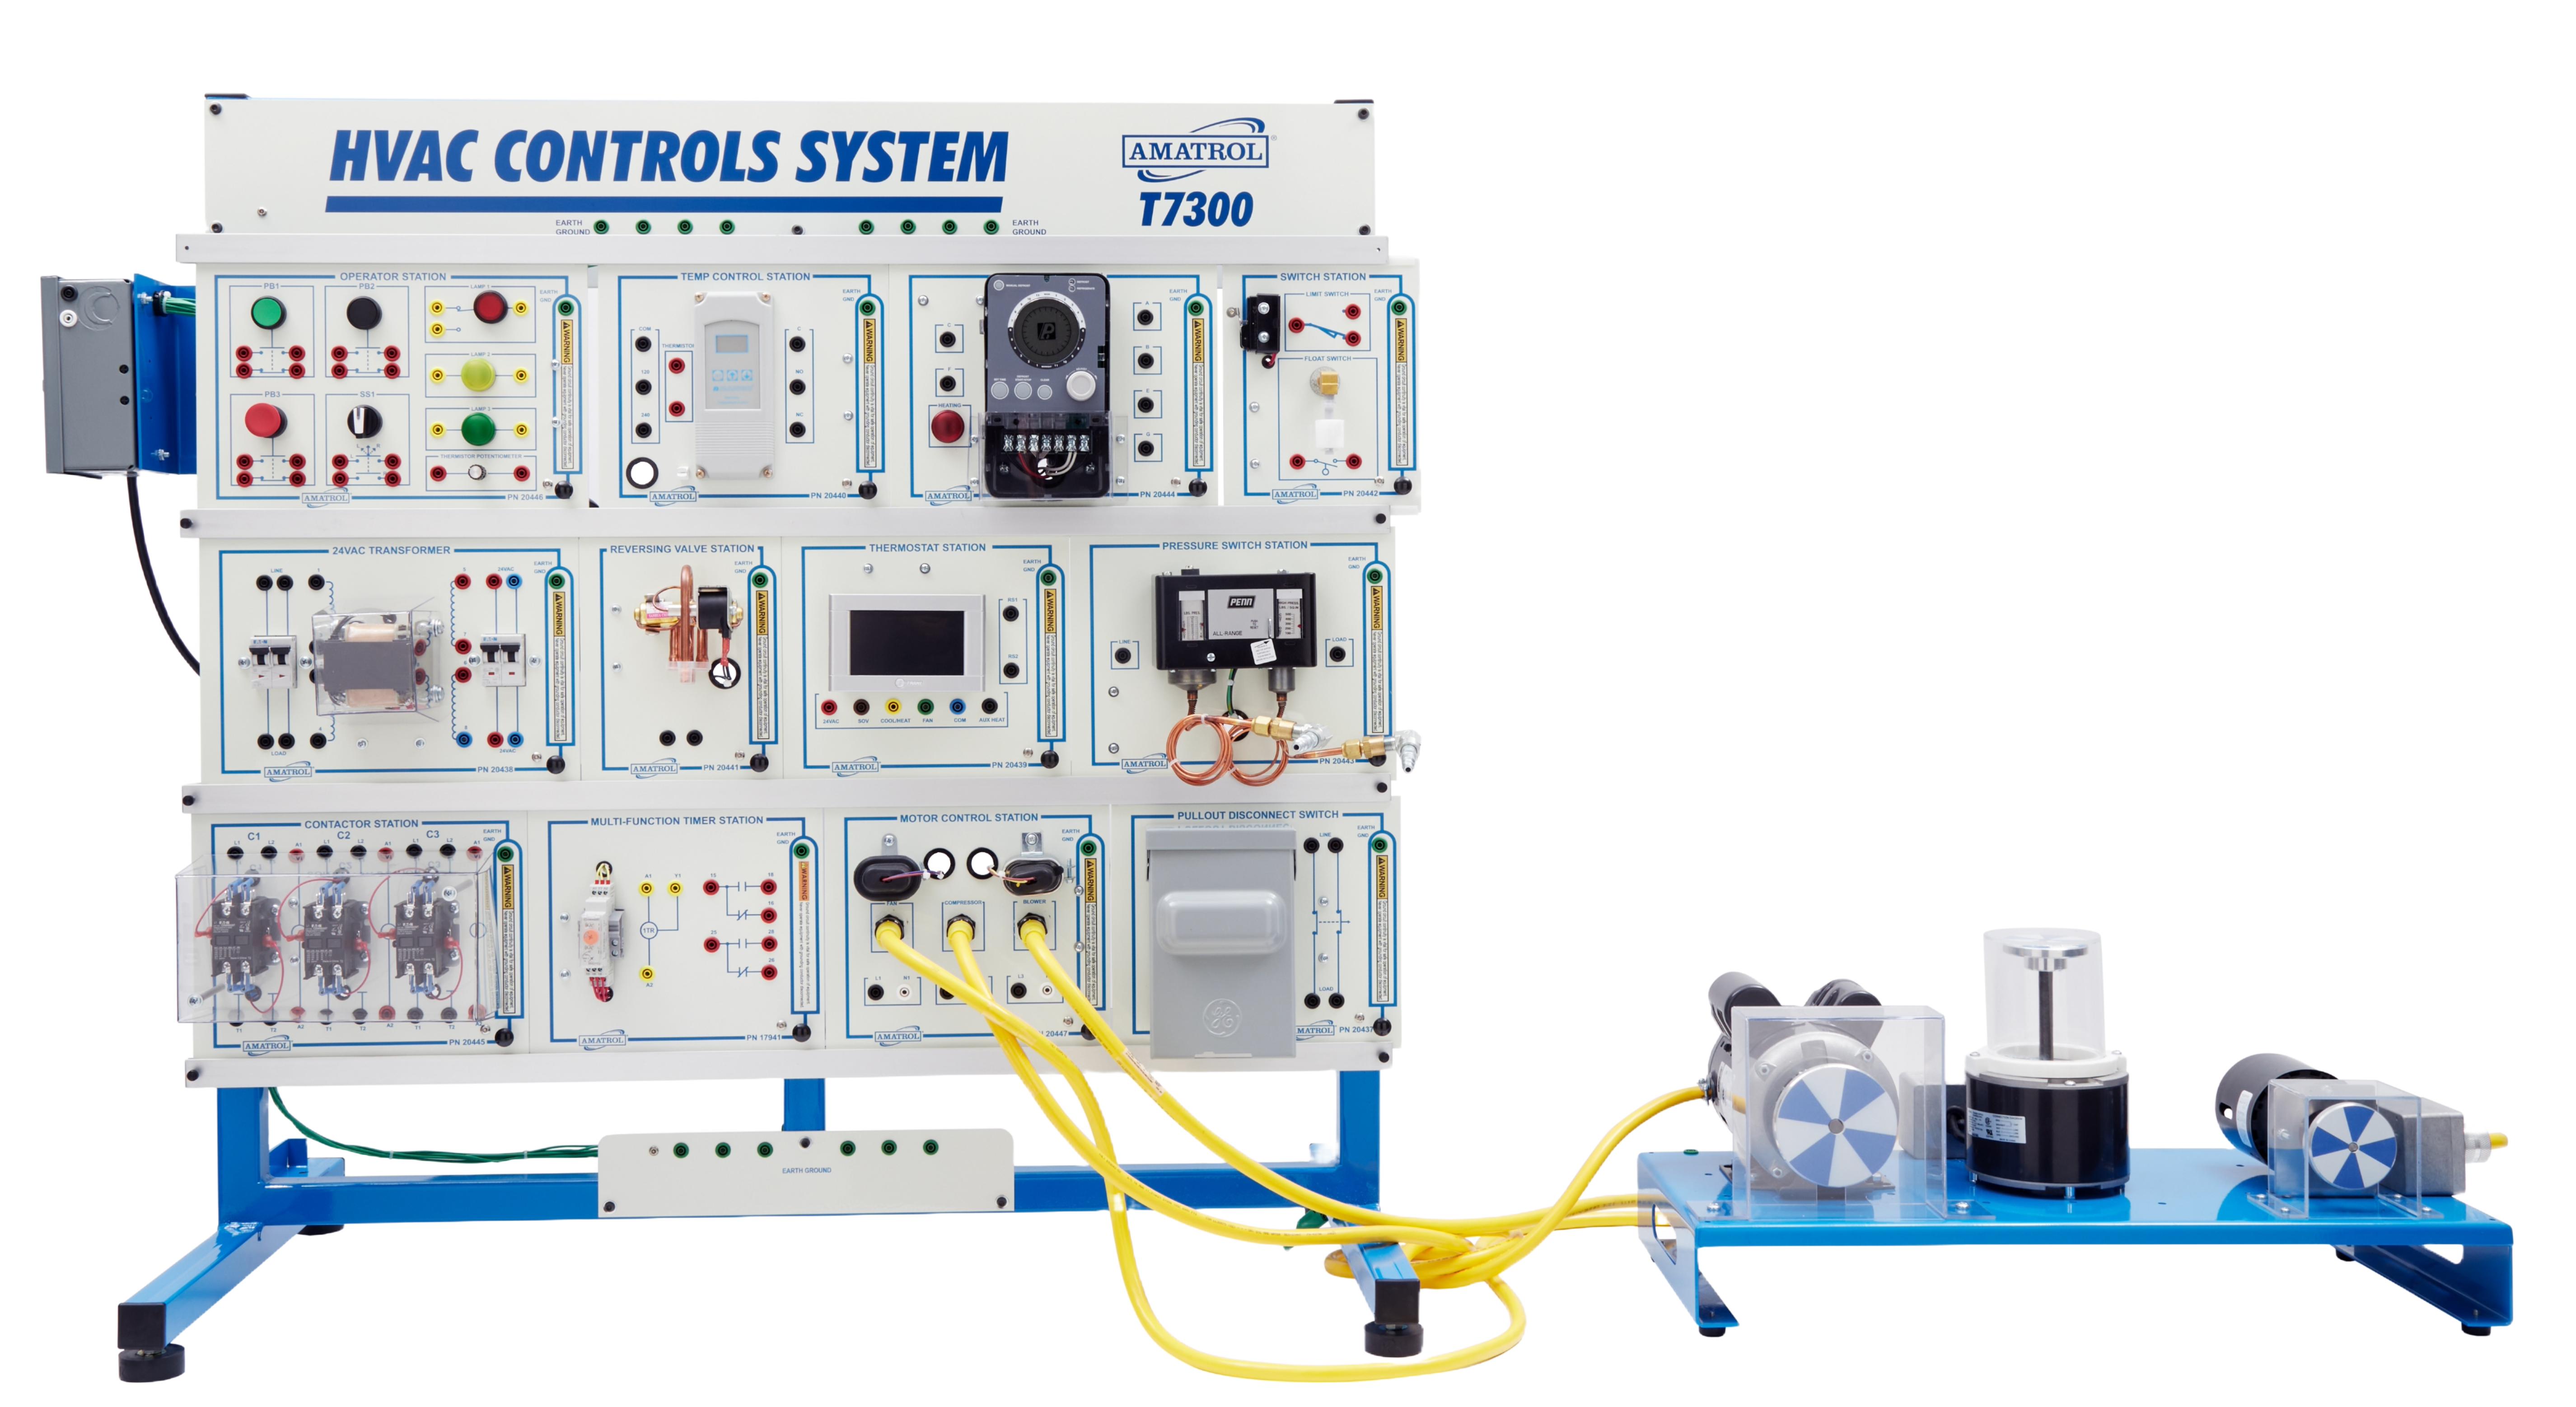 Amatrol HVAC Motor Control Training System (T7300)